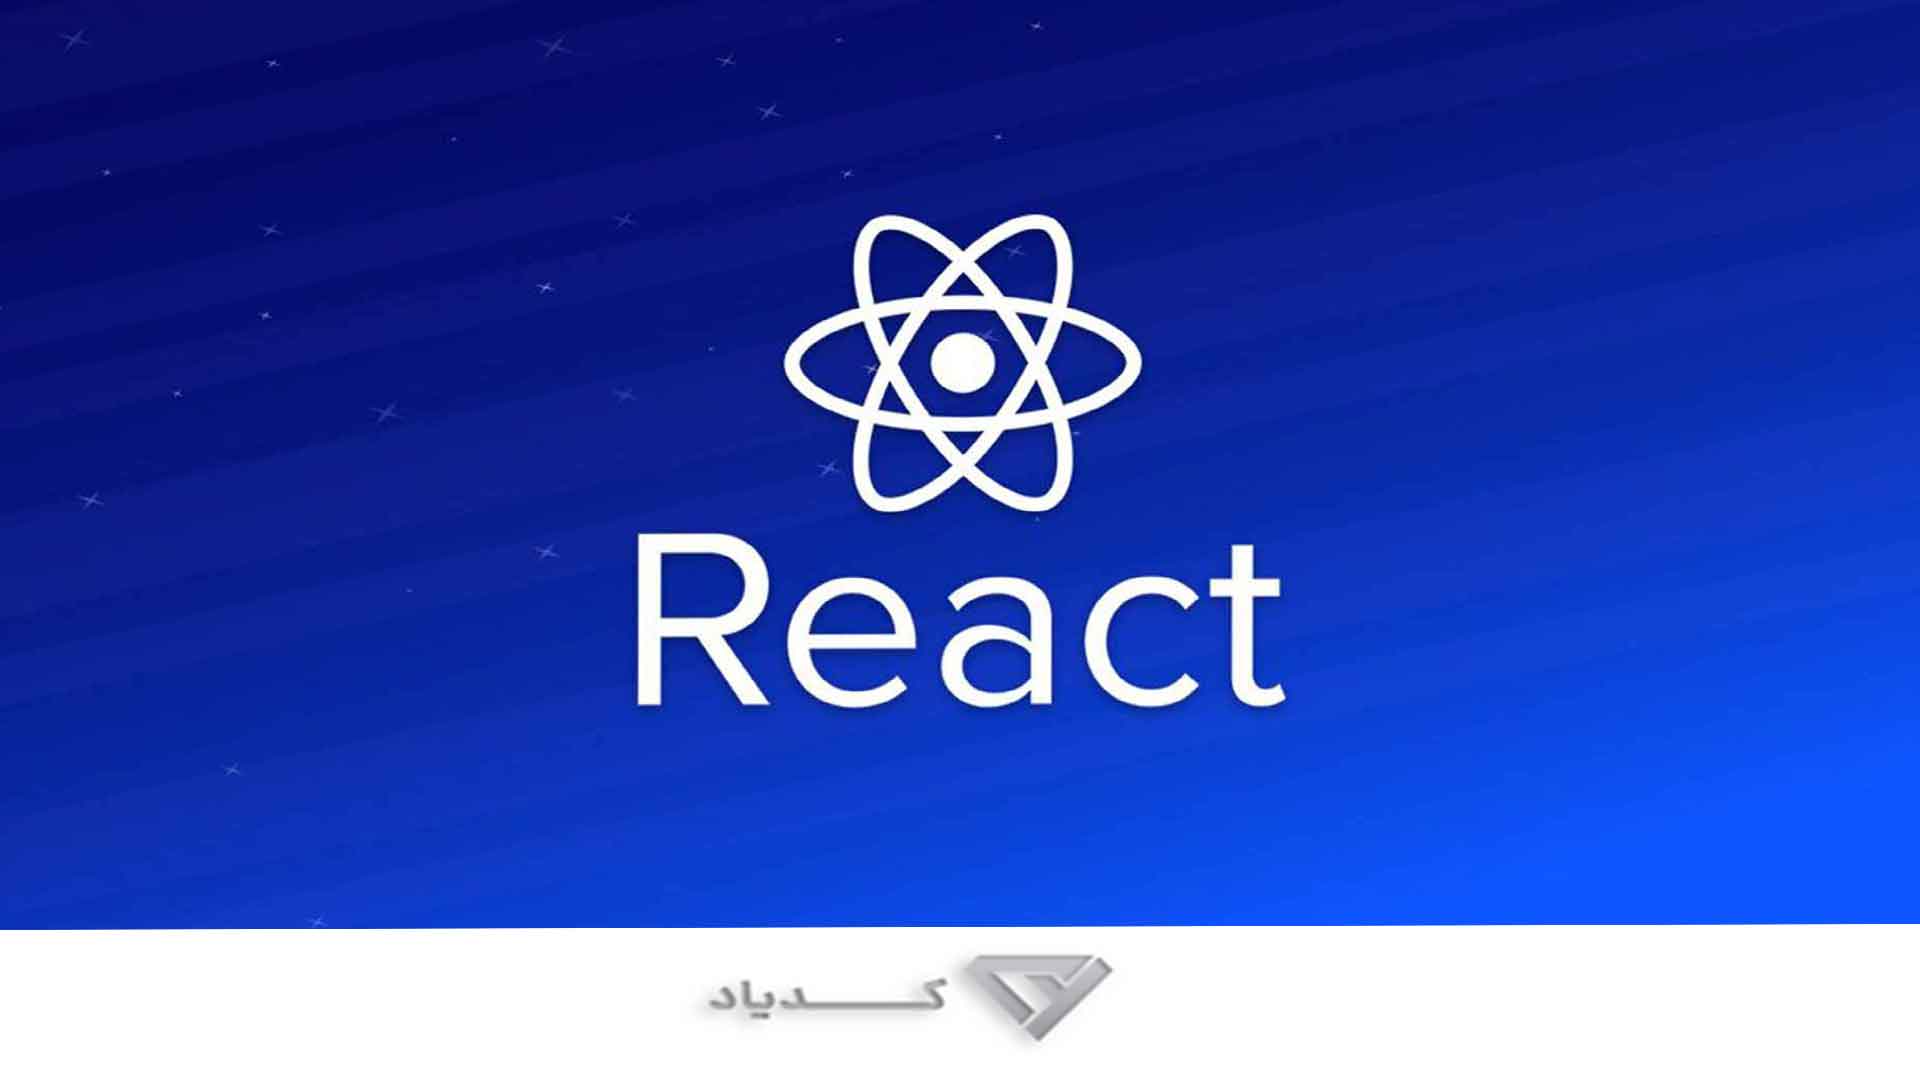 کتابخانه React و ویژگی های Reactjs (ری اکت جی اس)